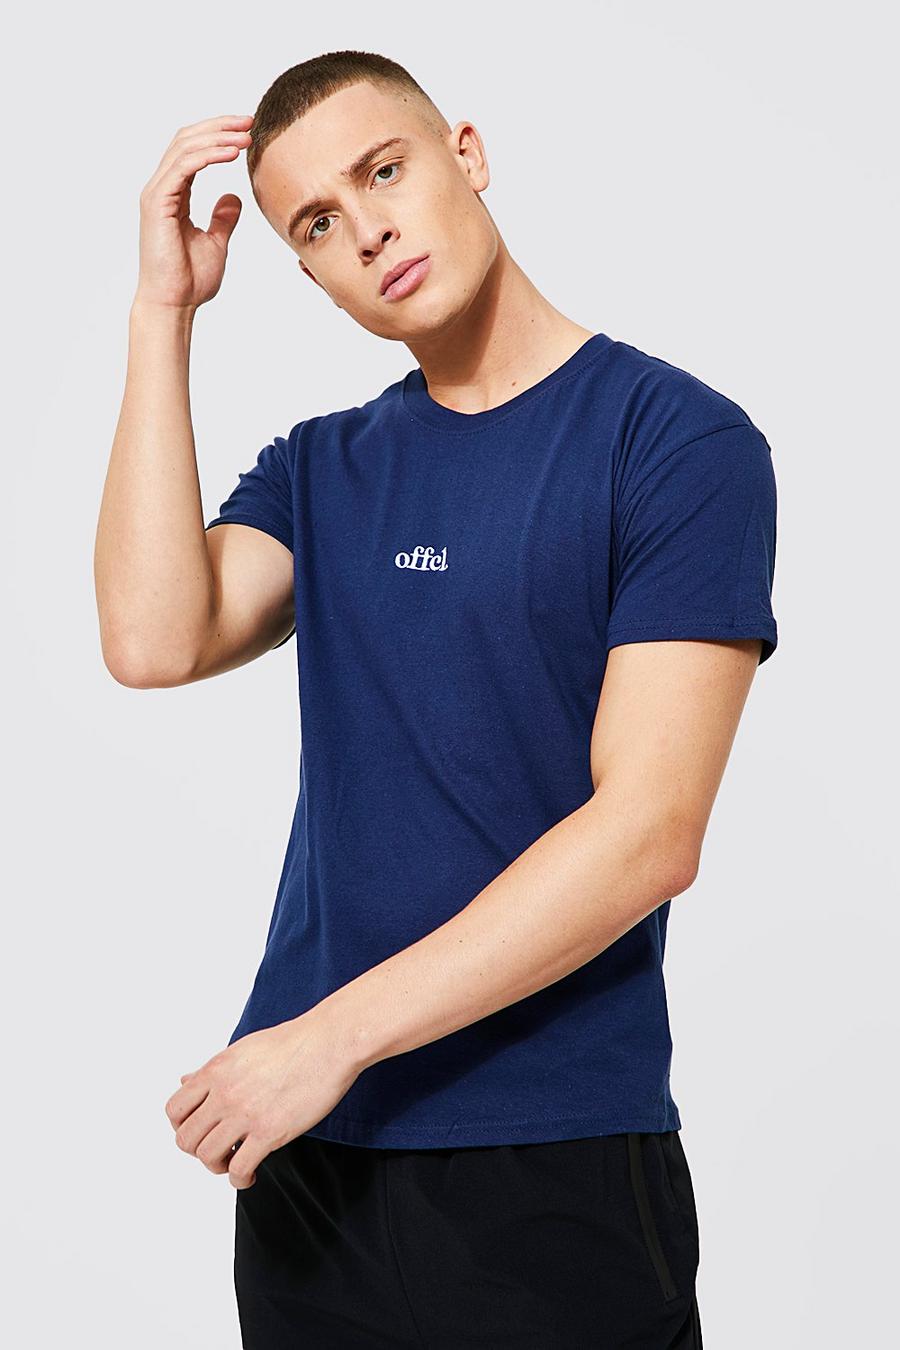 T-shirt avec broderie - Offcl, Navy marineblau